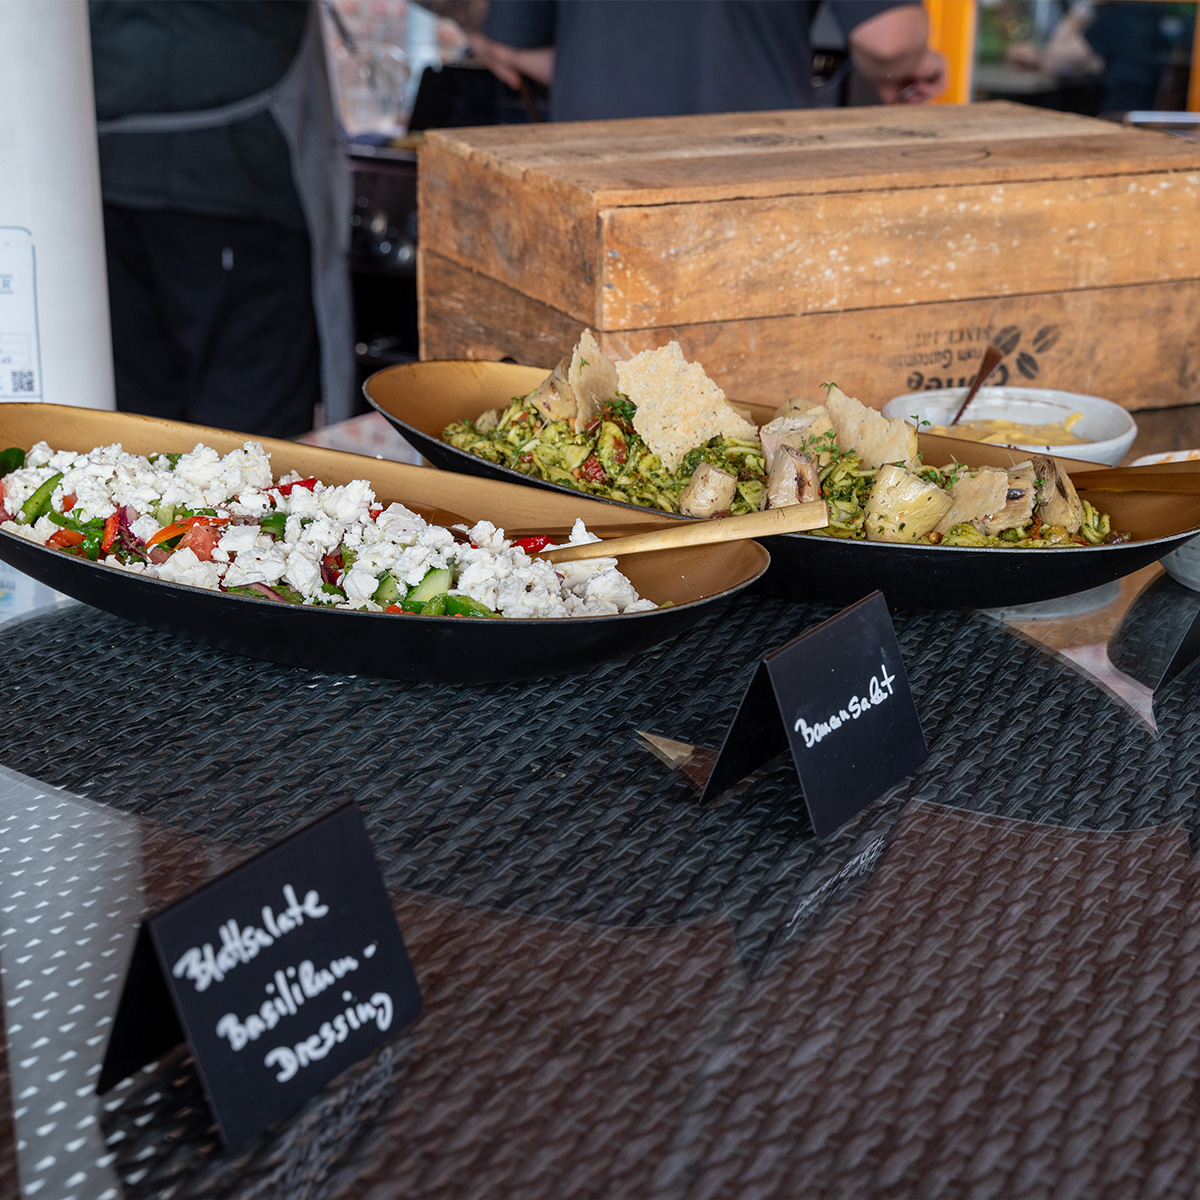 Zwei Salate auf einem Tisch in schwarzen Schalen, einer mit Feta und Gemüse, der andere mit Nudeln und Pilzen. Im Hintergrund ein Holzblock und weitere Personen.